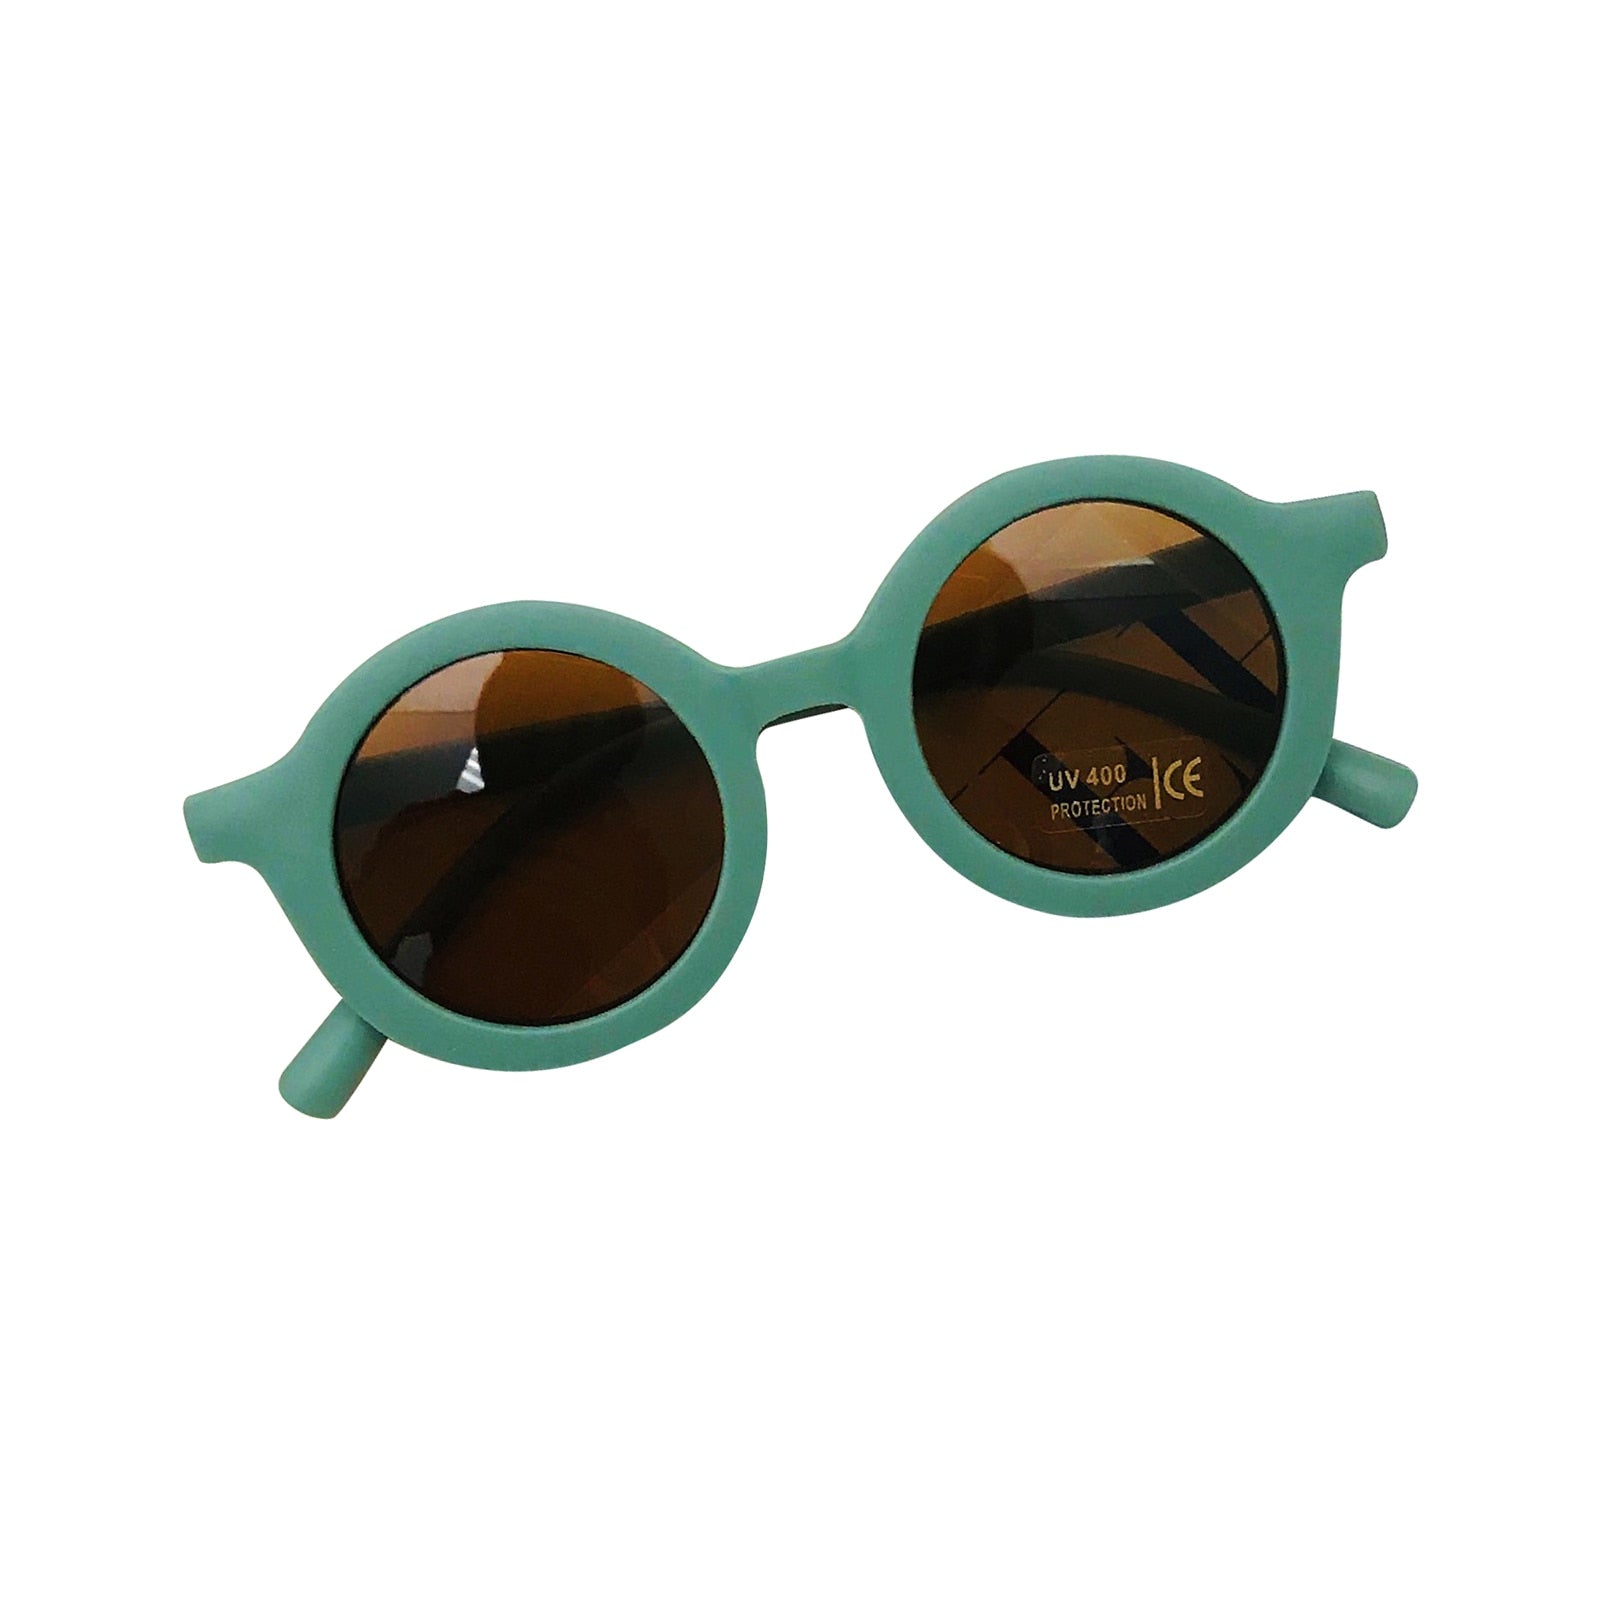 The Lacey Retro sunglasses